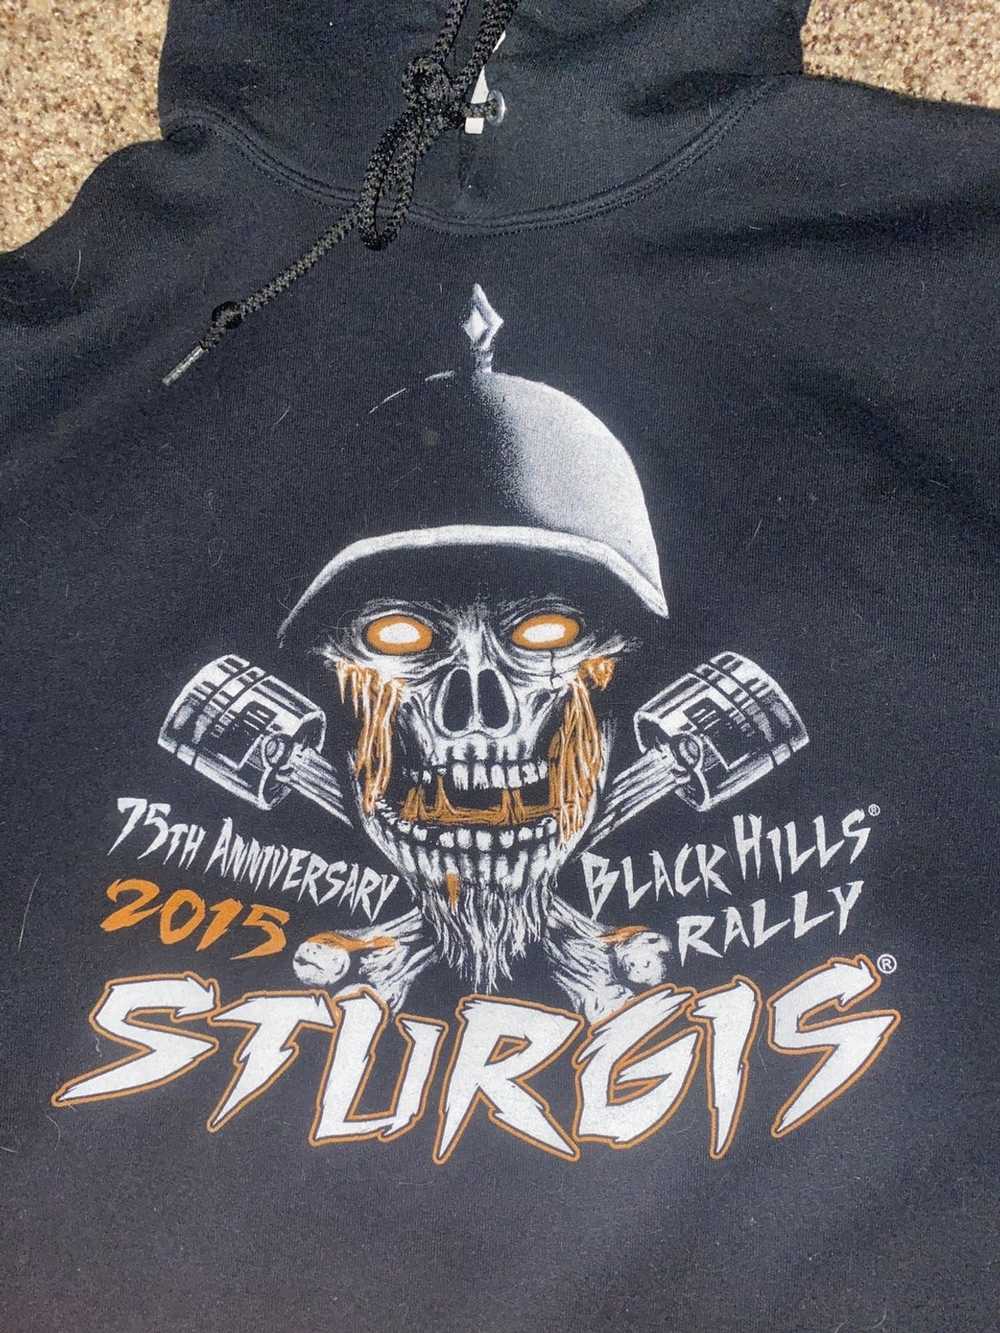 Vintage 75 anniversary black hills rally hoodie - image 2